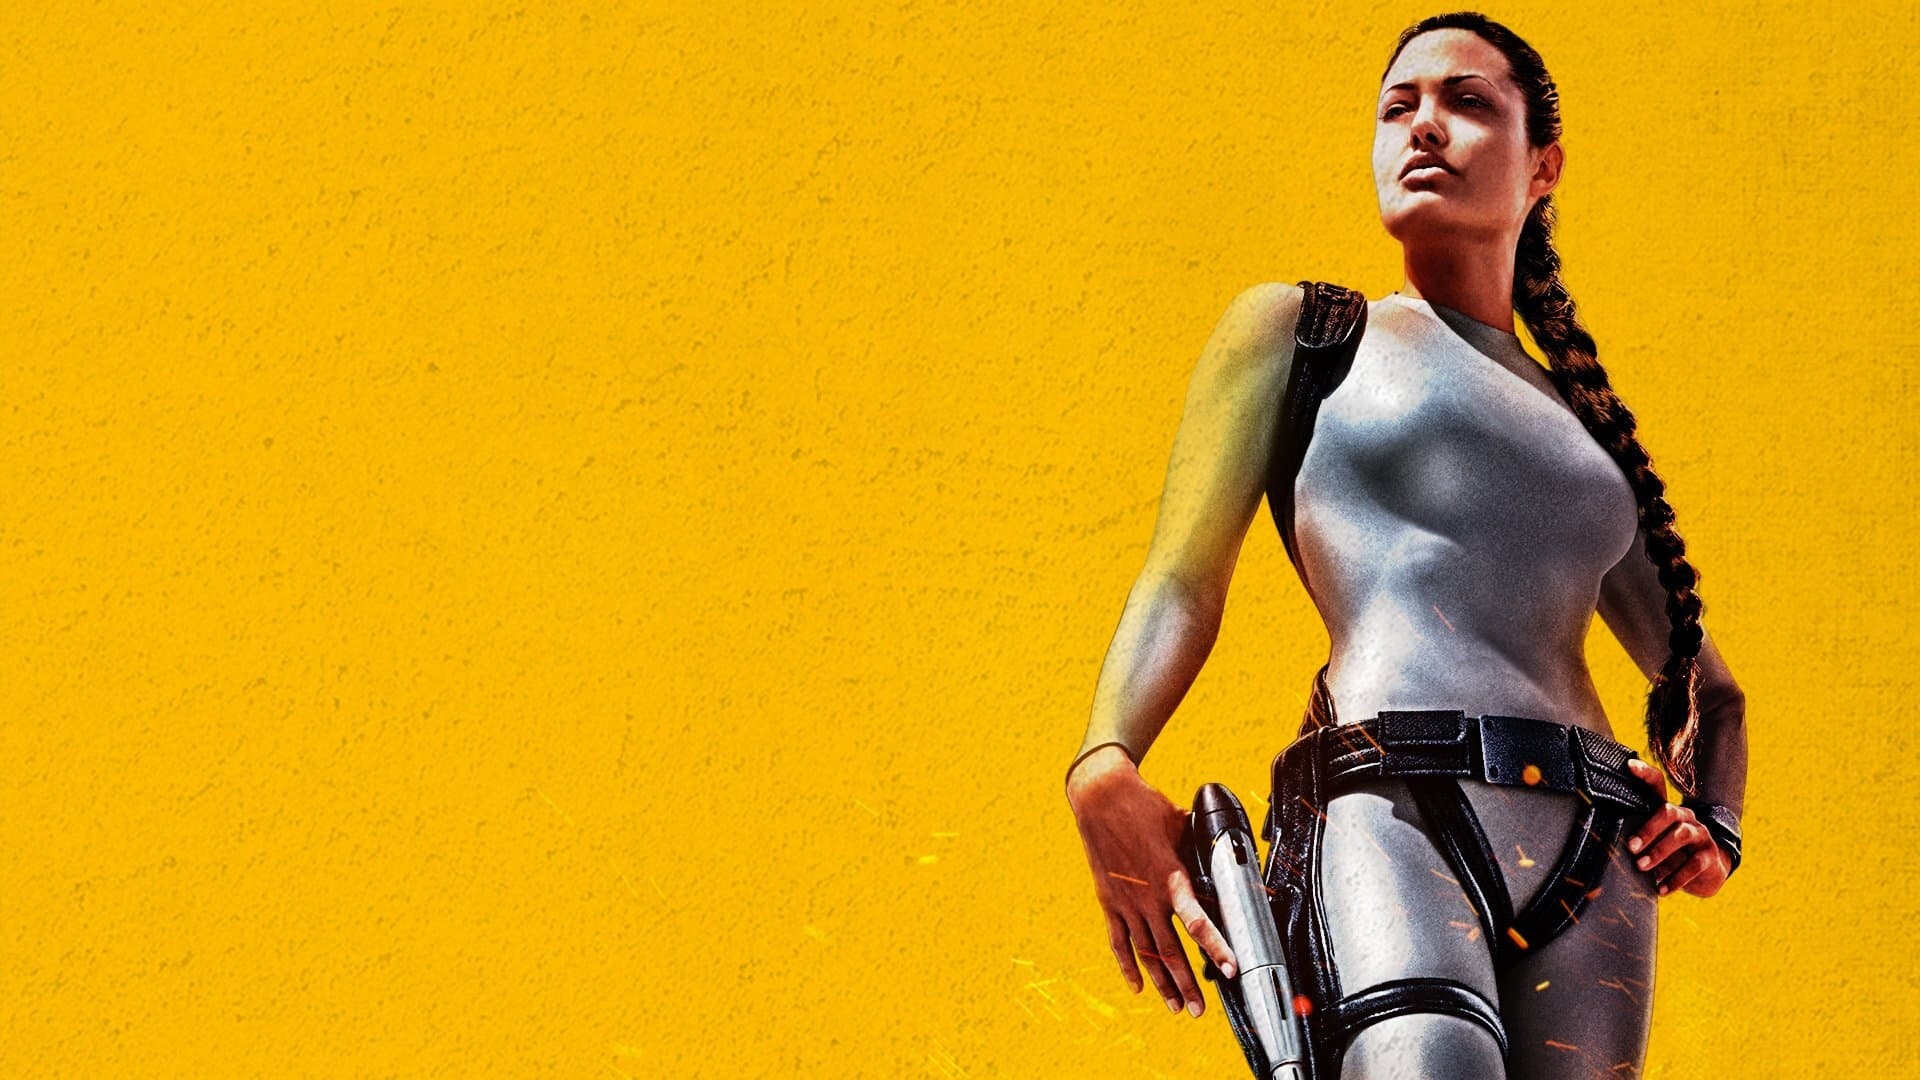 Lara Croft: Tomb Raider - La culla della vita